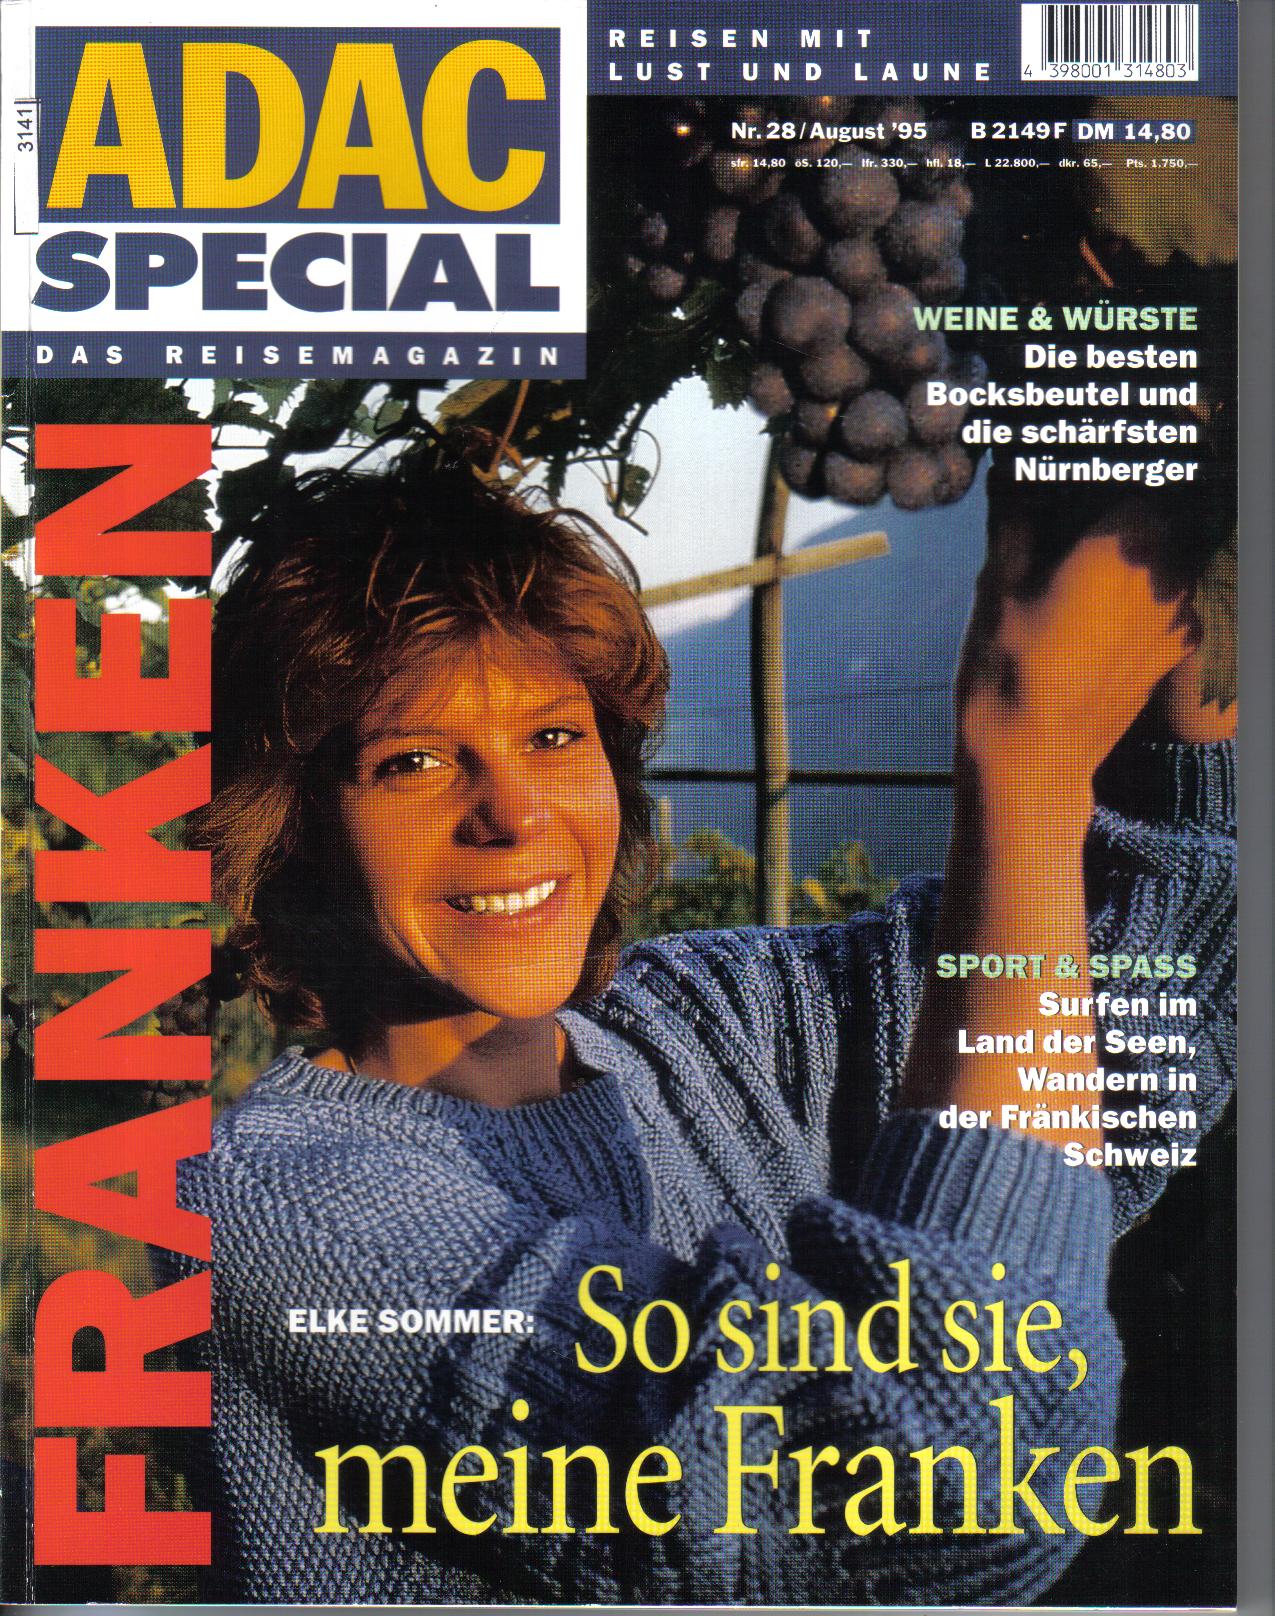 ADAC  Special  Das Reismagazin  FRANKEN